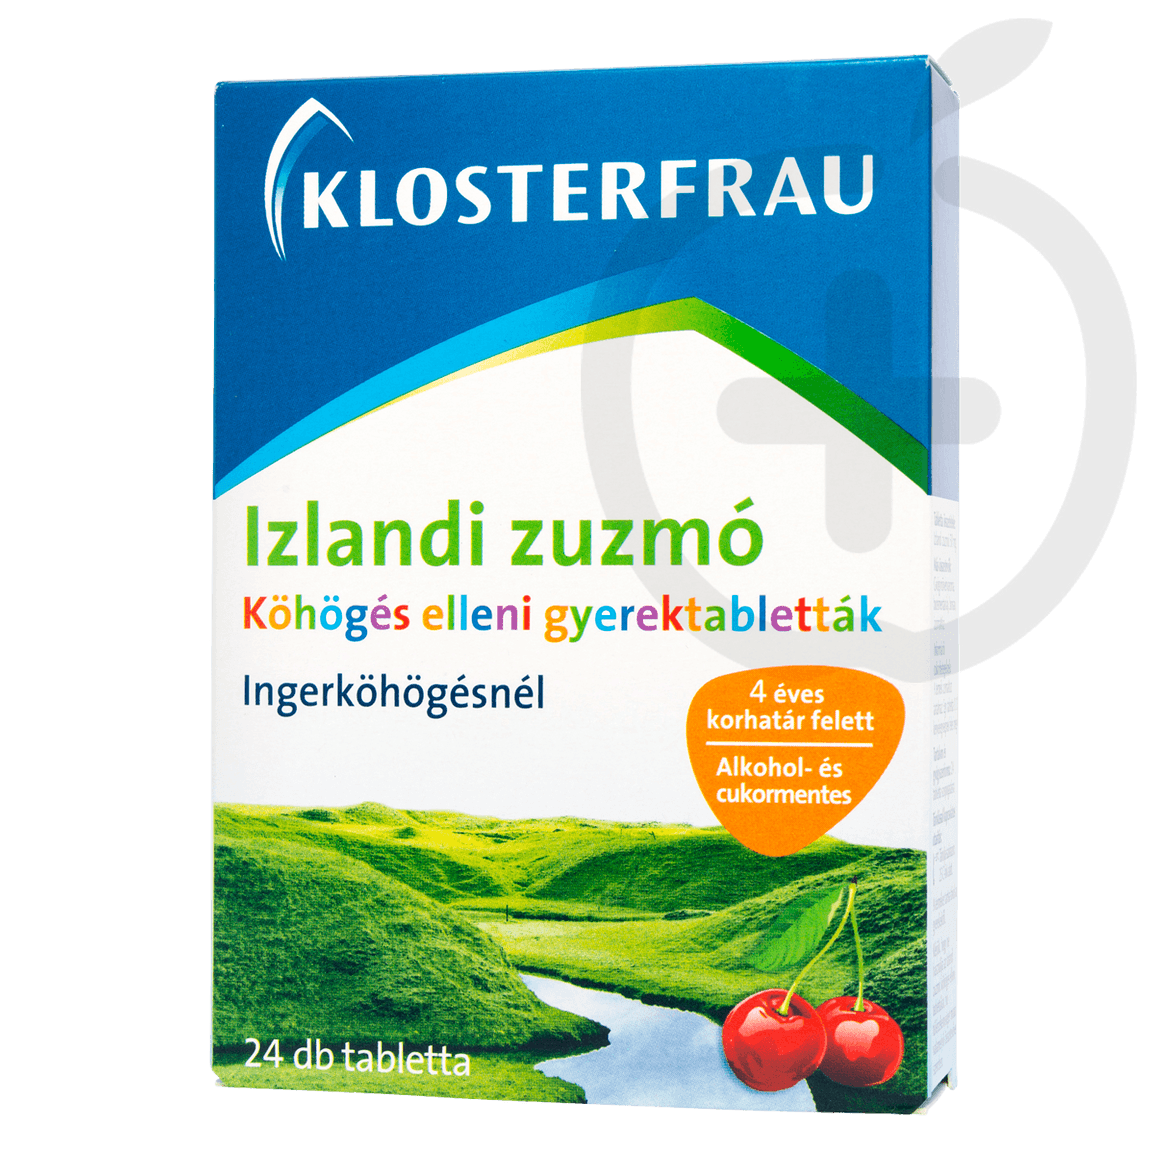 Klosterfrau Izlandi Zuzmó köhögés elleni tabletta gyermekeknek